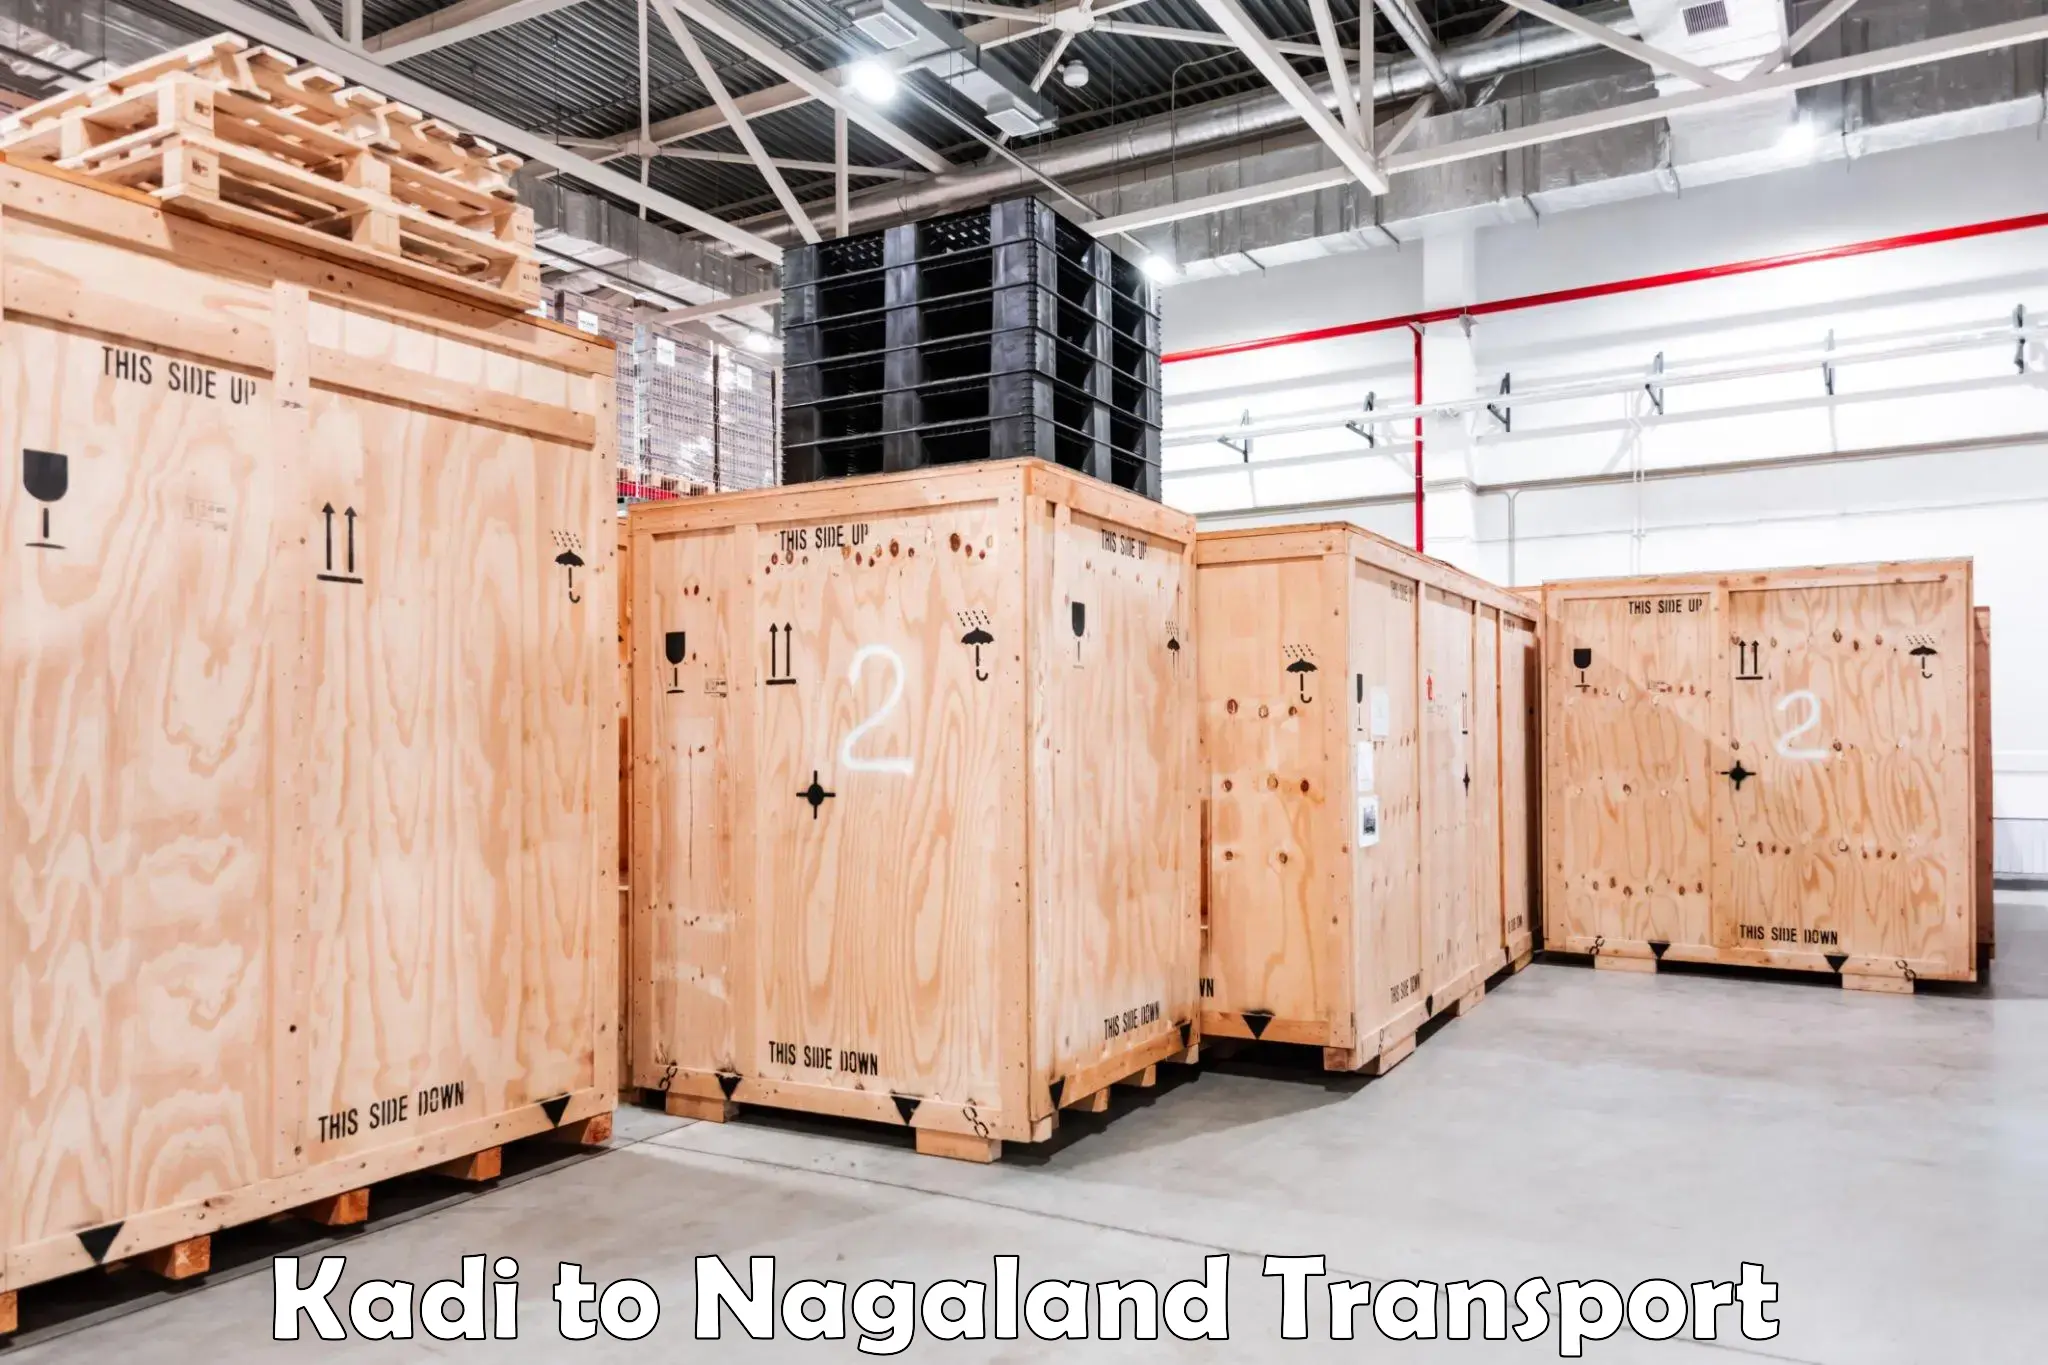 Lorry transport service Kadi to Nagaland